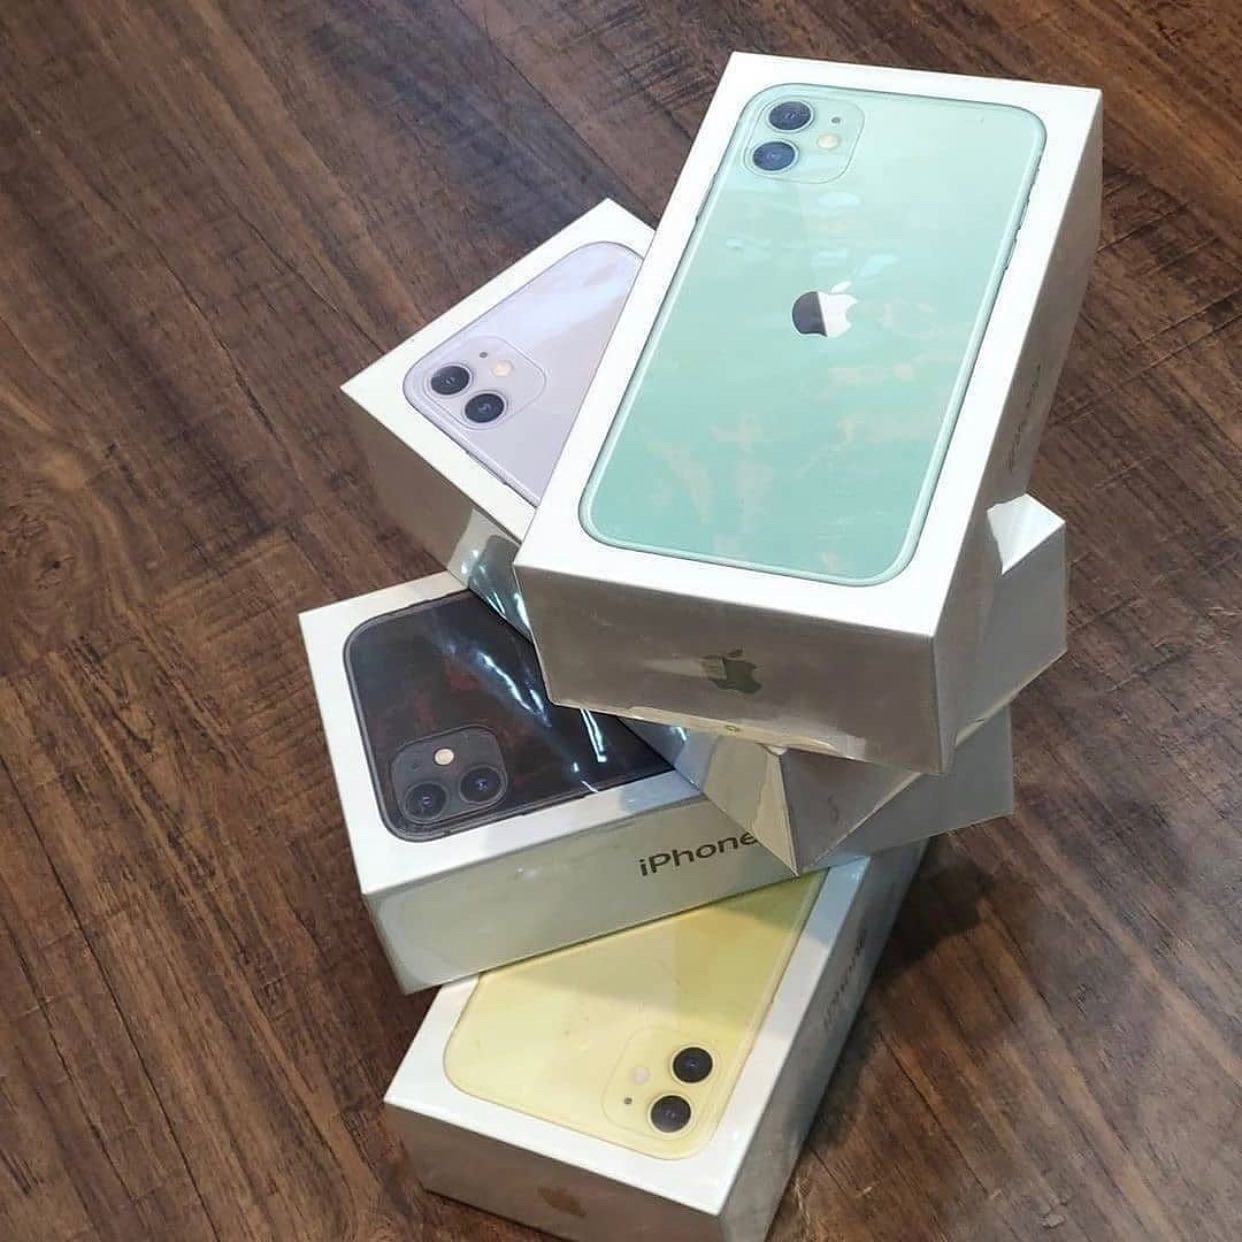 PROMOTION 🚨 iPhone 11 neuf scellé disponible au magasin 🏬 en